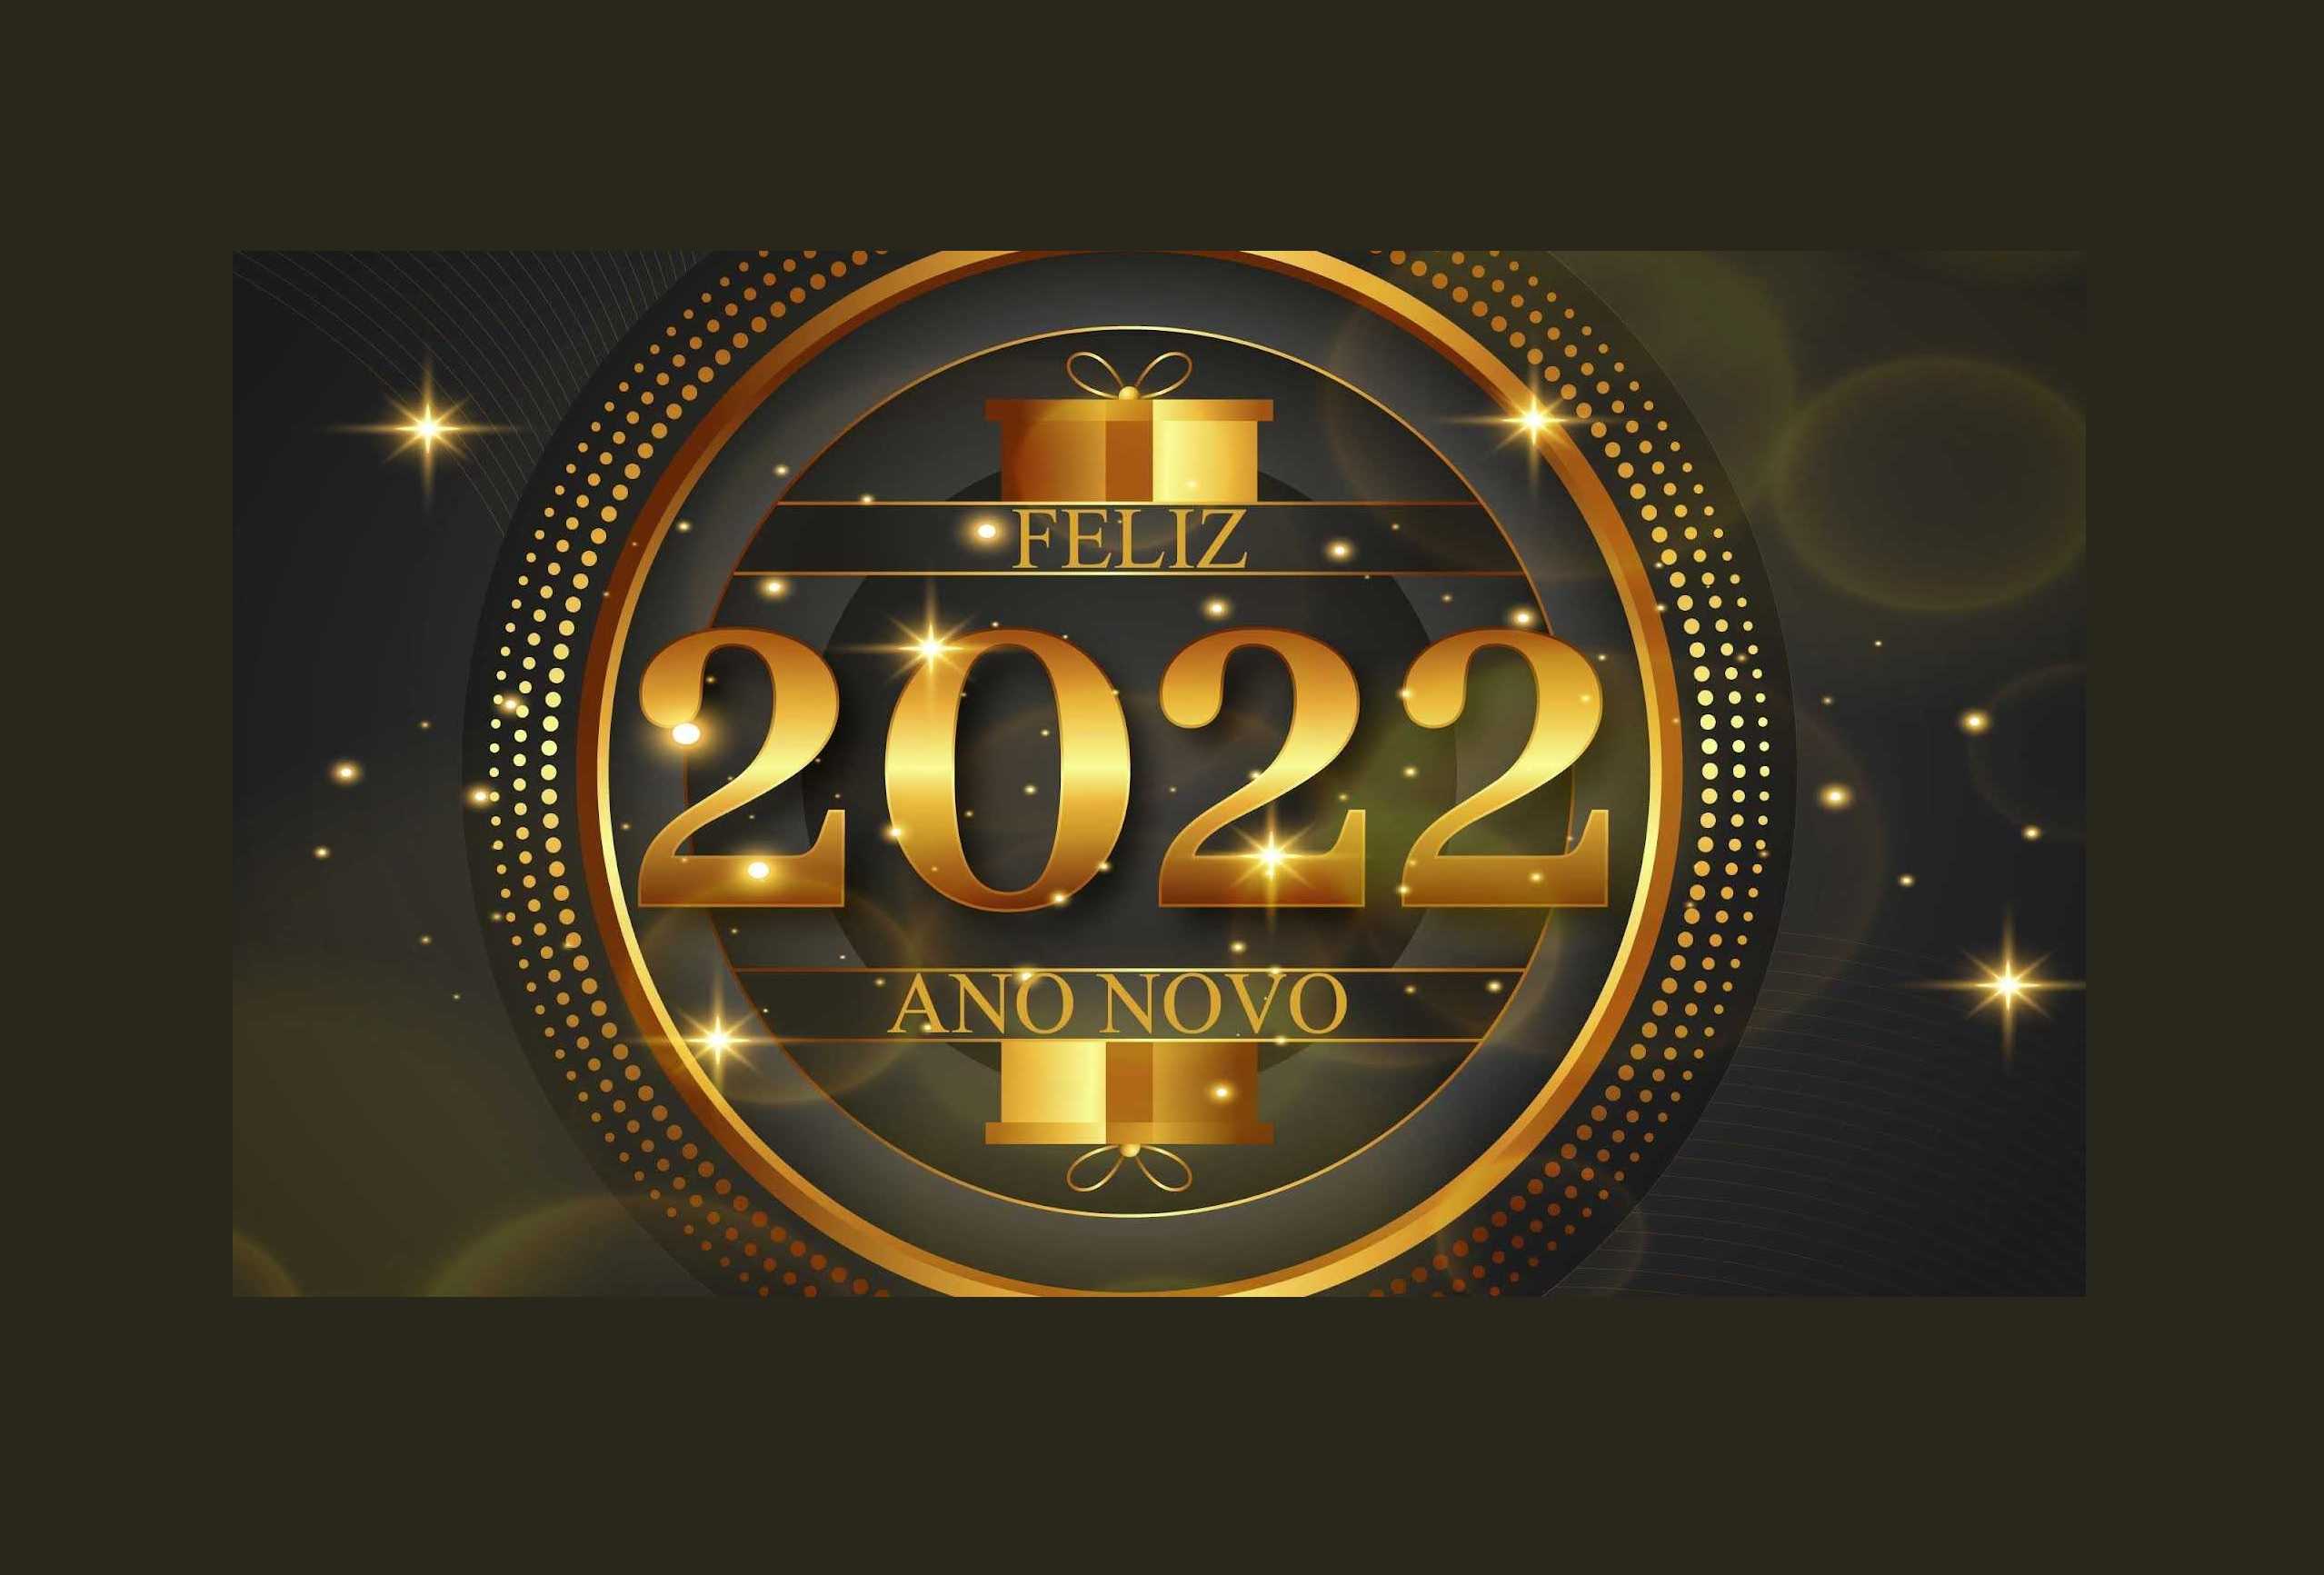 Bom 2022, acordo vs. acordos, 31 entradas em A covid-19 na língua, os 20 anos do euro e as palavras vacina e tradição